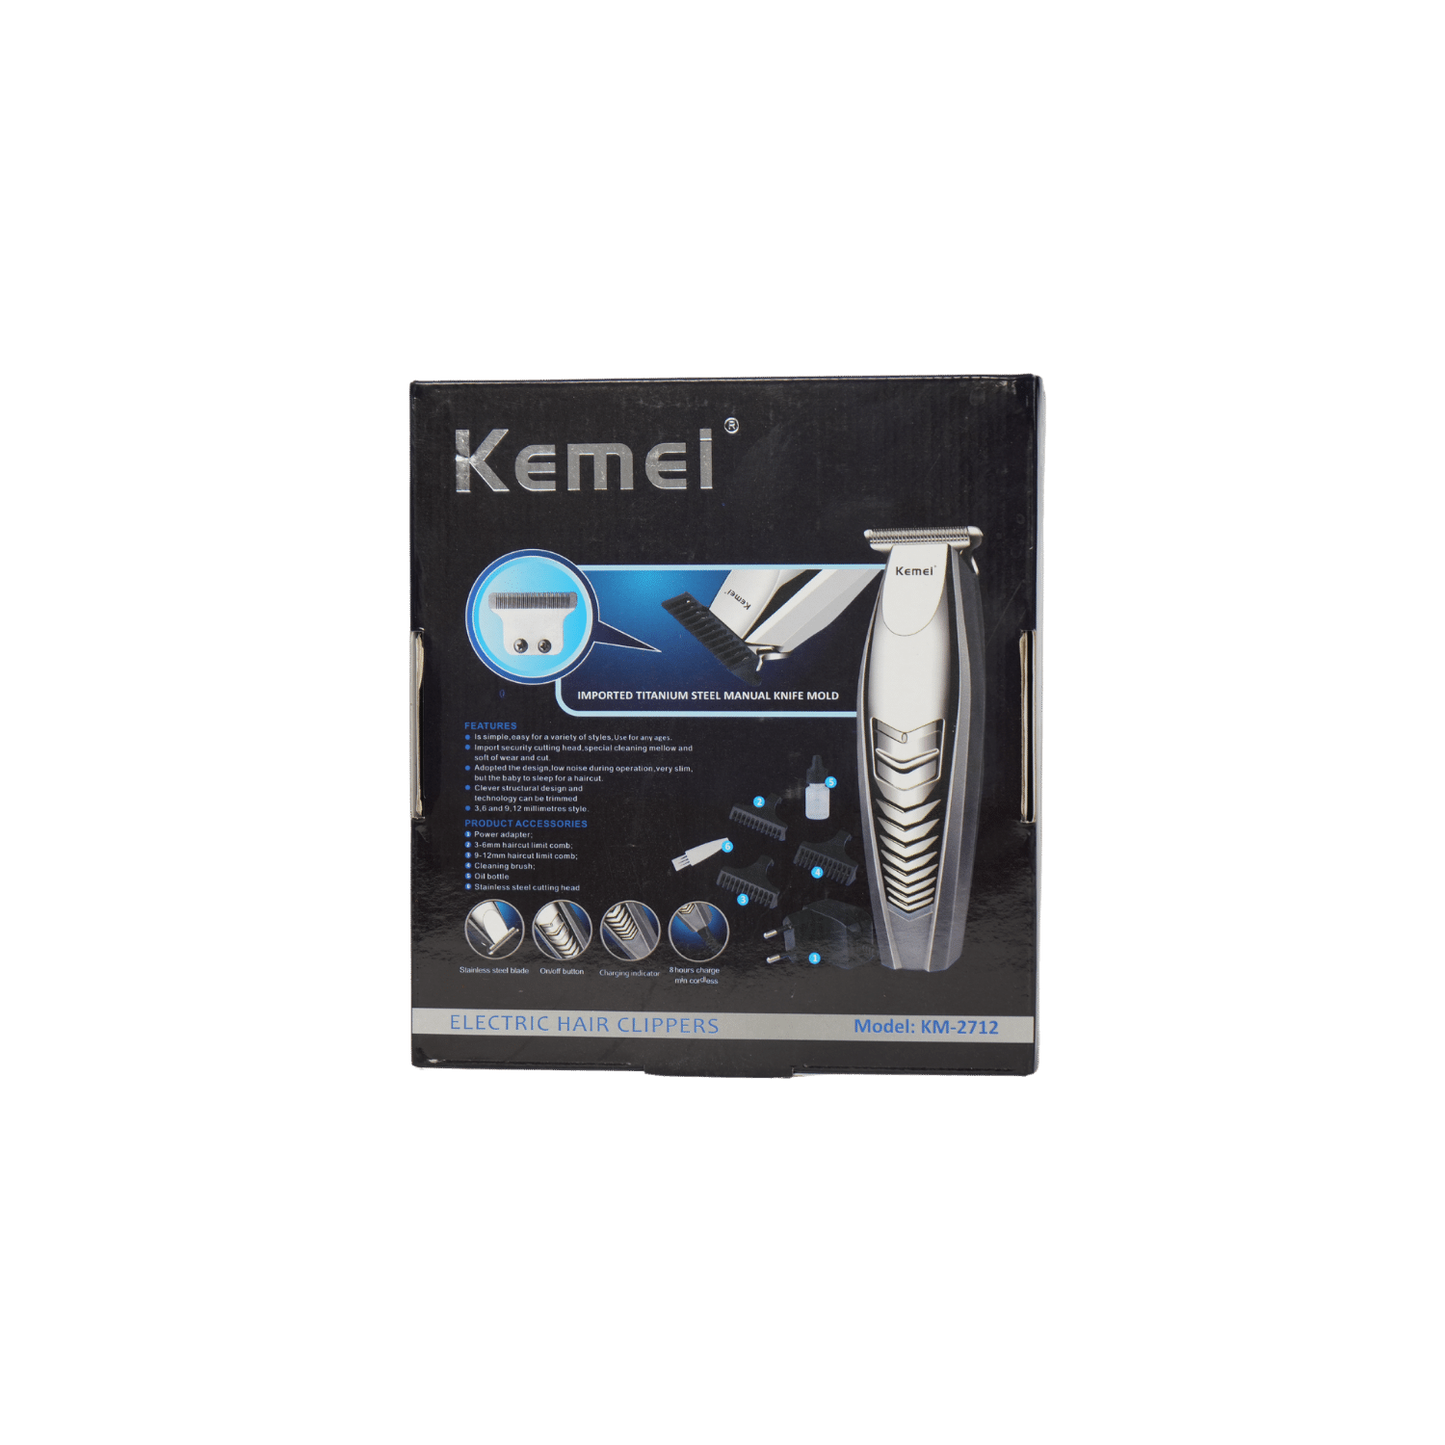 Kemei Km-2712 Rechargeable Hair Clipper